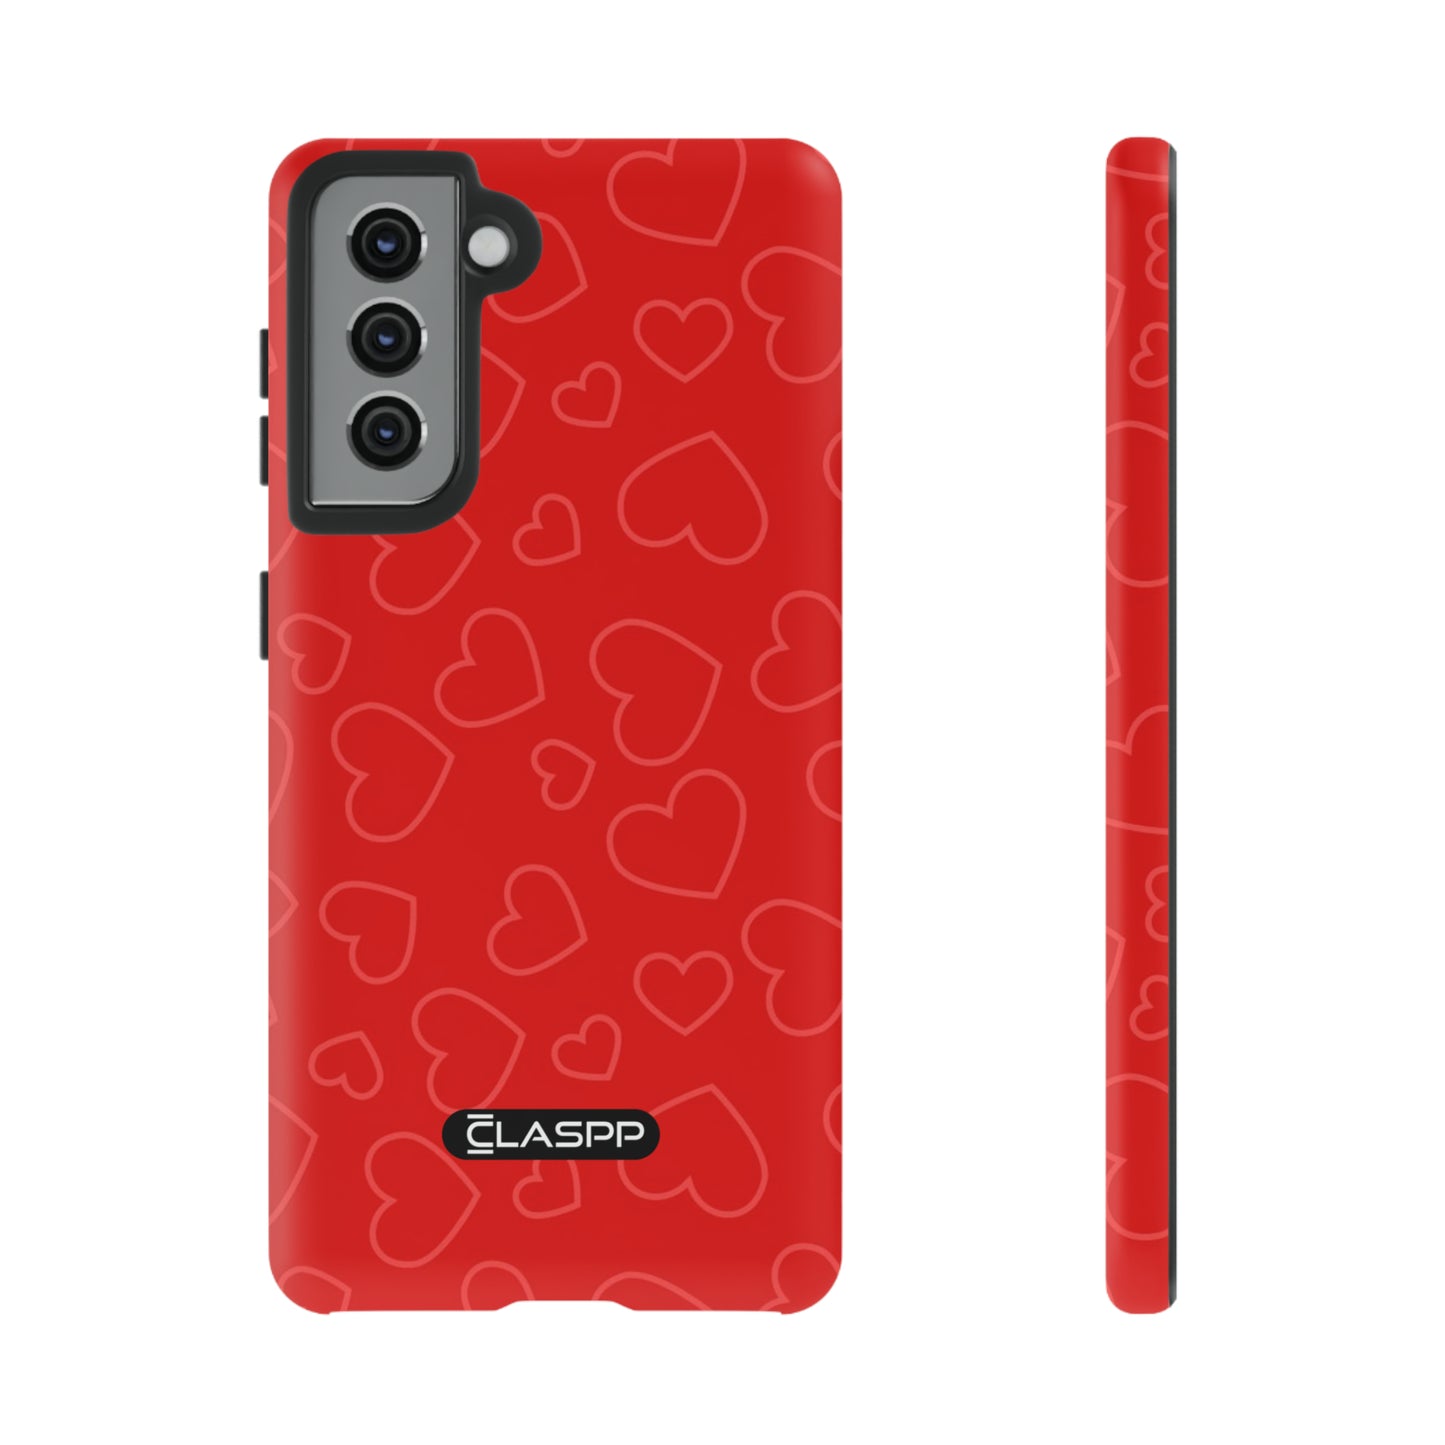 Samsung Galaxy S21 Valentine's Day phone case